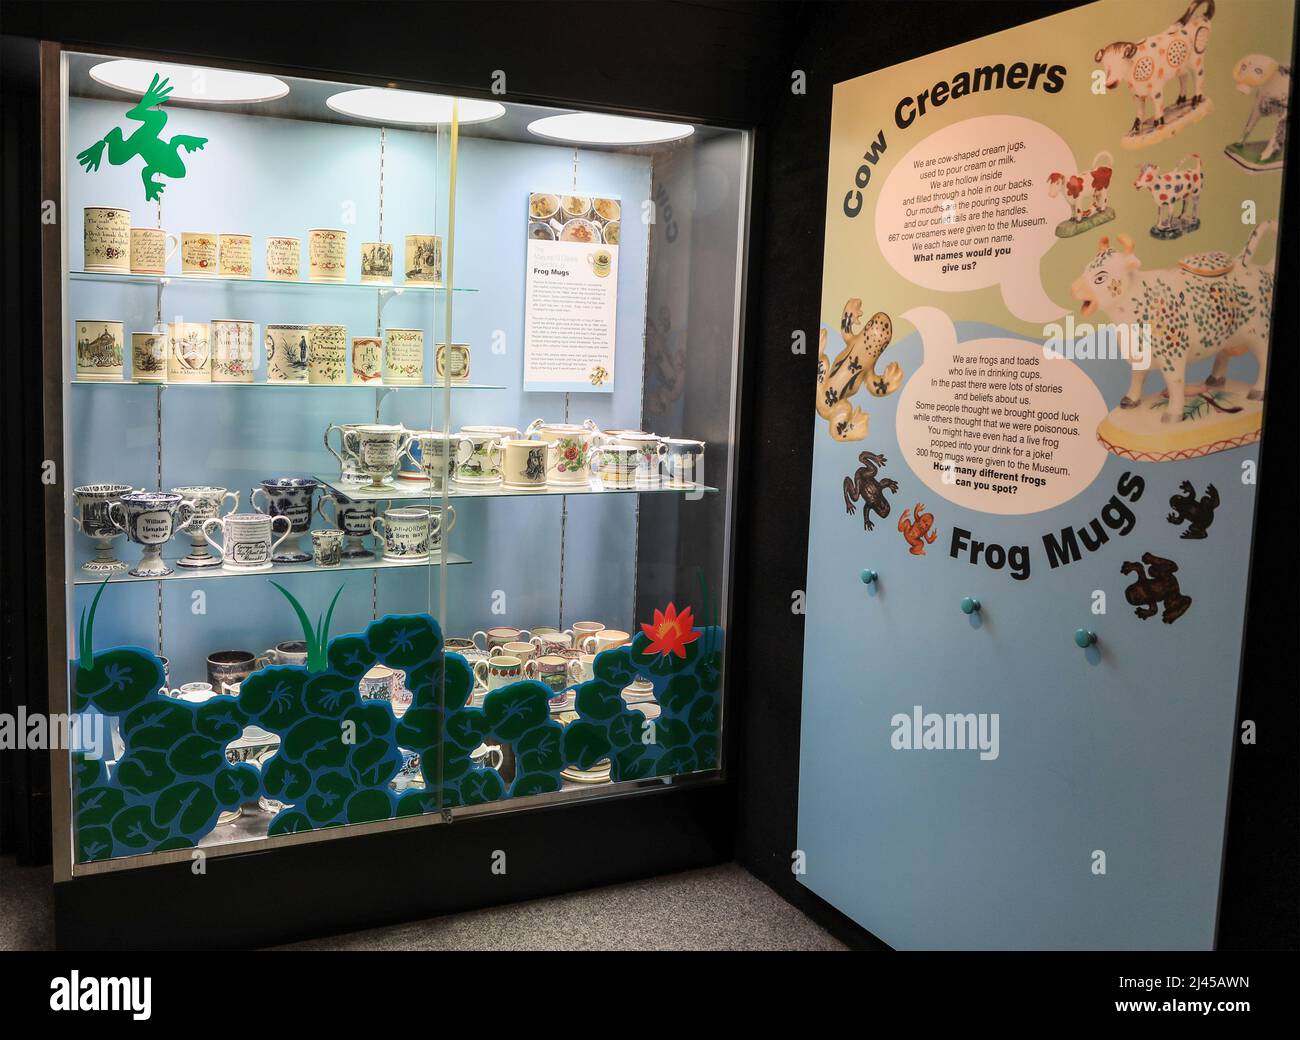 Un caso de exhibición de jarras de rana en el Museo de las Cercanías y Galería de Arte, Hanley, Stoke-on-Trent, Staffs, Inglaterra, REINO UNIDO Foto de stock